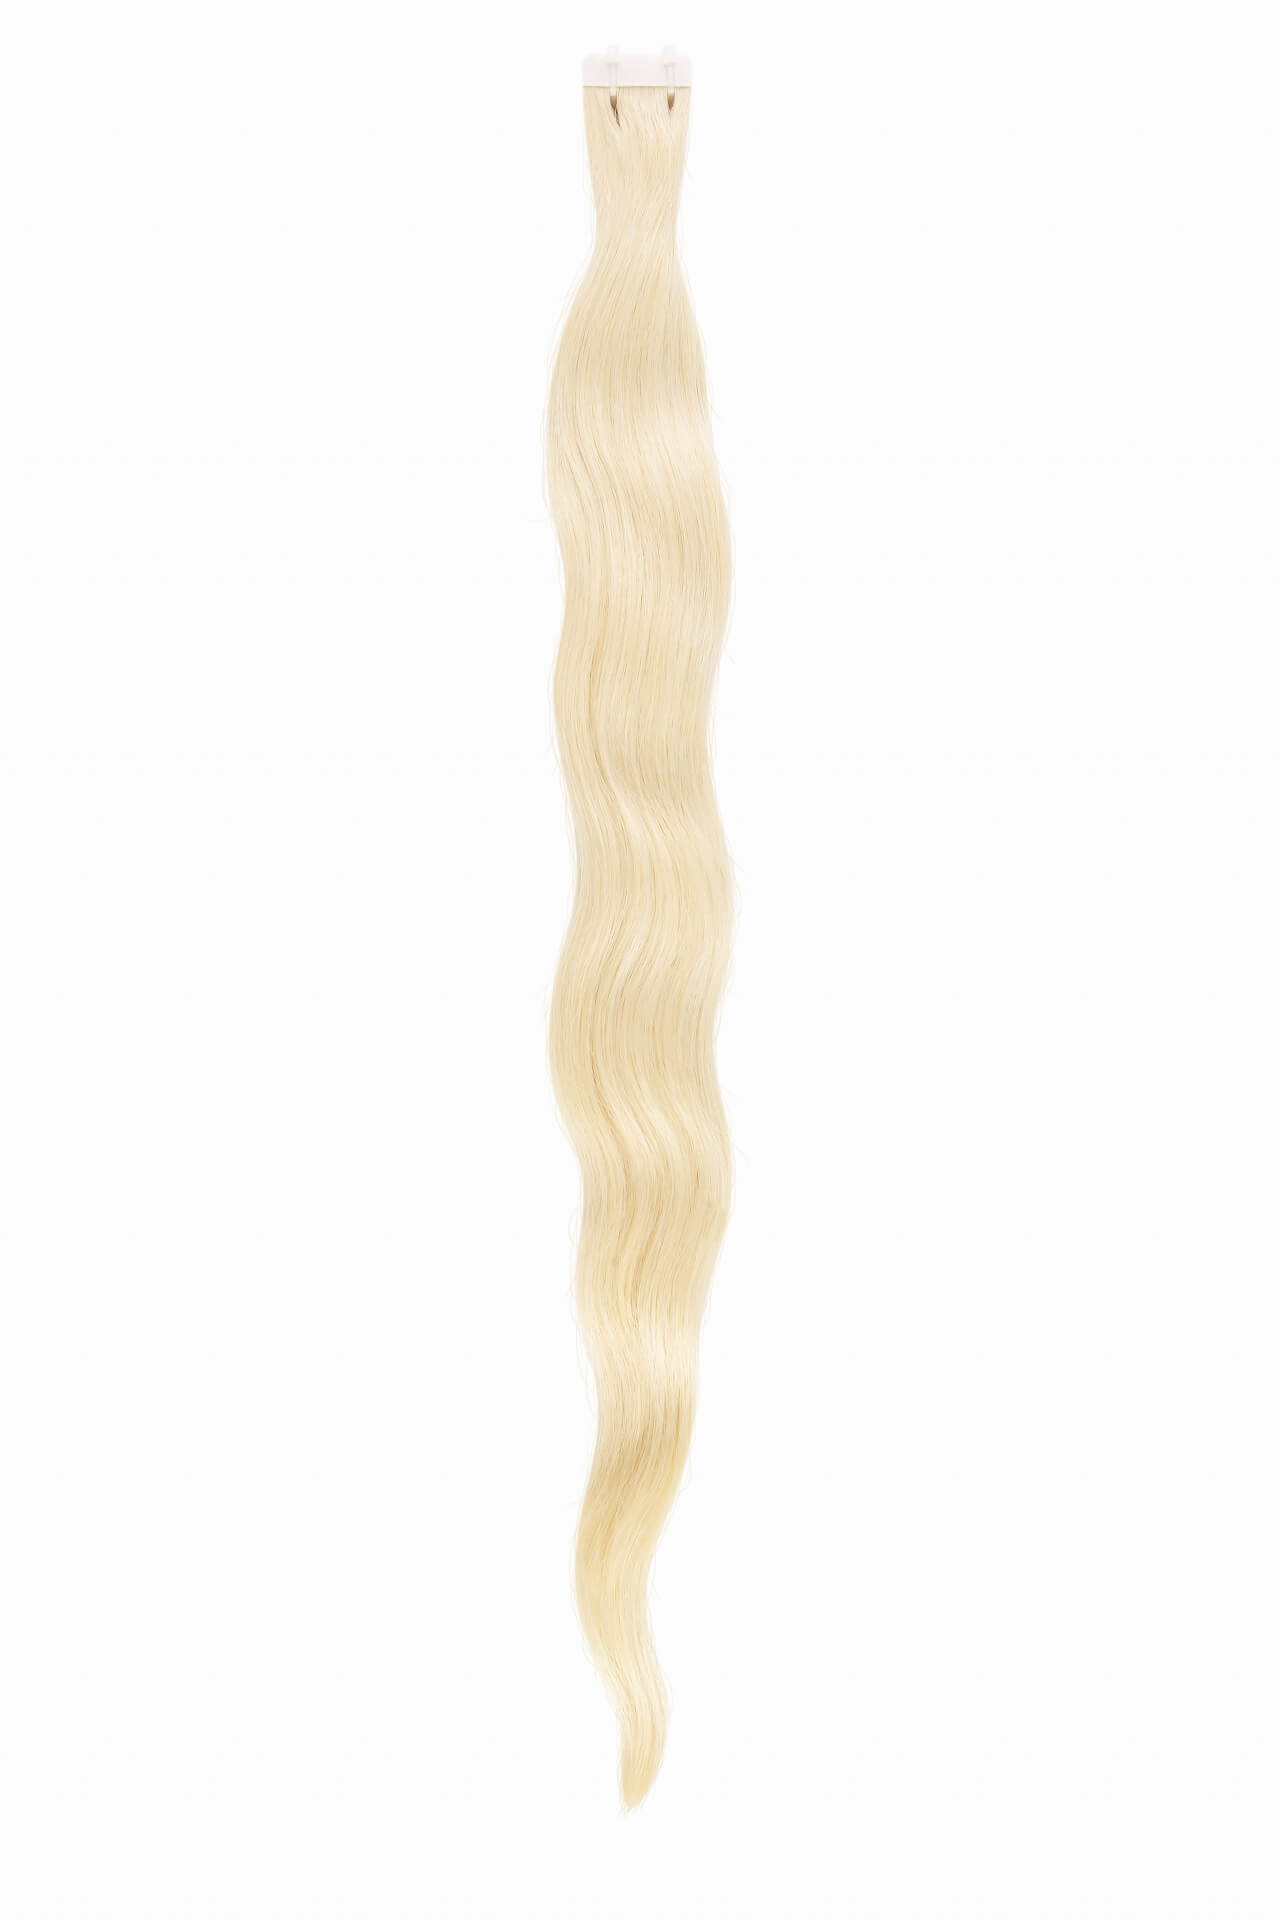 Vlasové pásky Original, odstín 18B